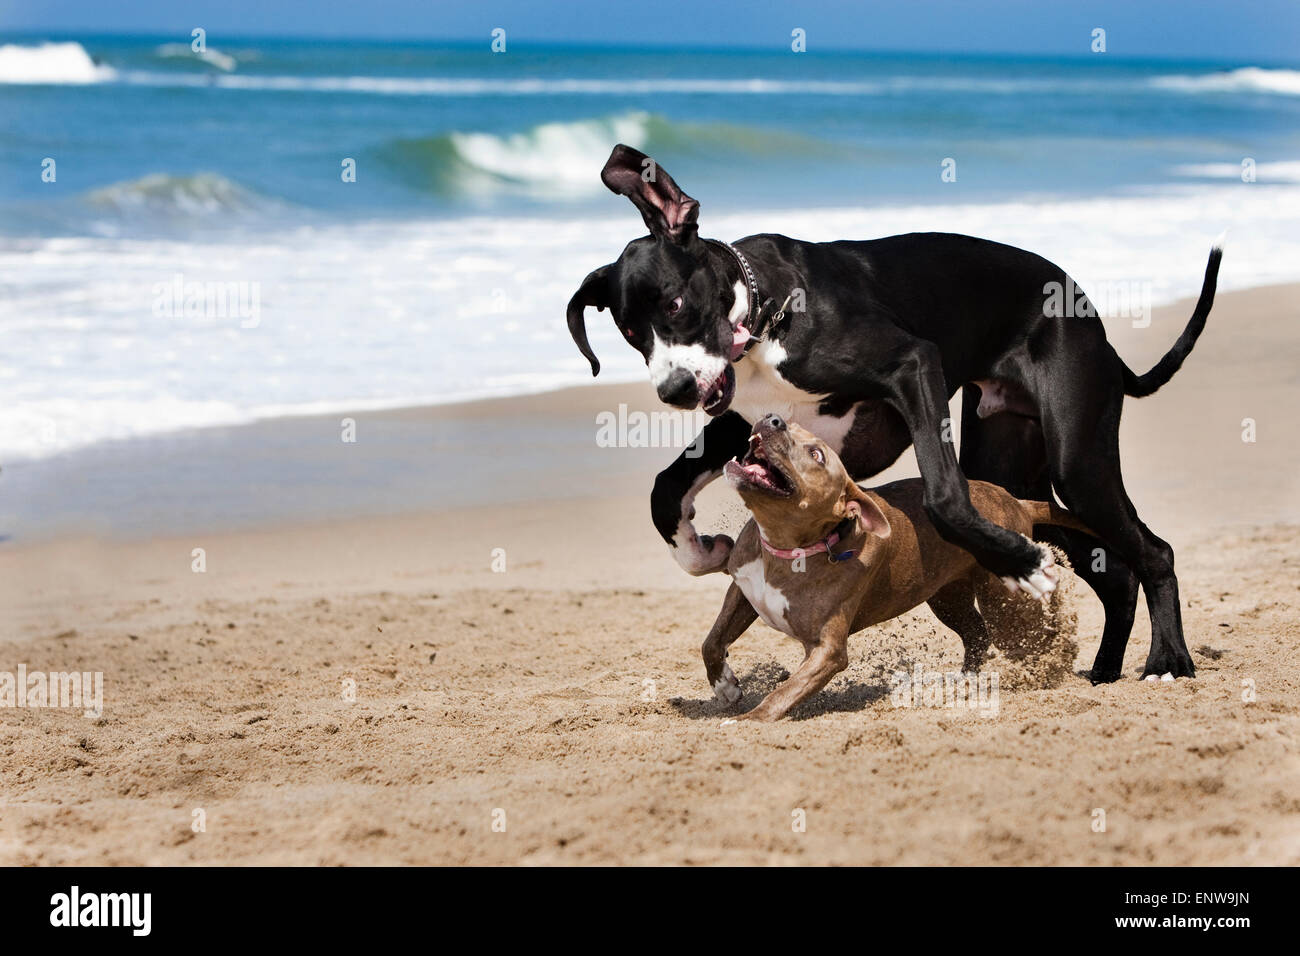 In bianco e nero un alano cane e piccoli Pitbull in esecuzione e riproduzione di disco in sabbia sulla spiaggia con vista oceano e le onde in background Foto Stock